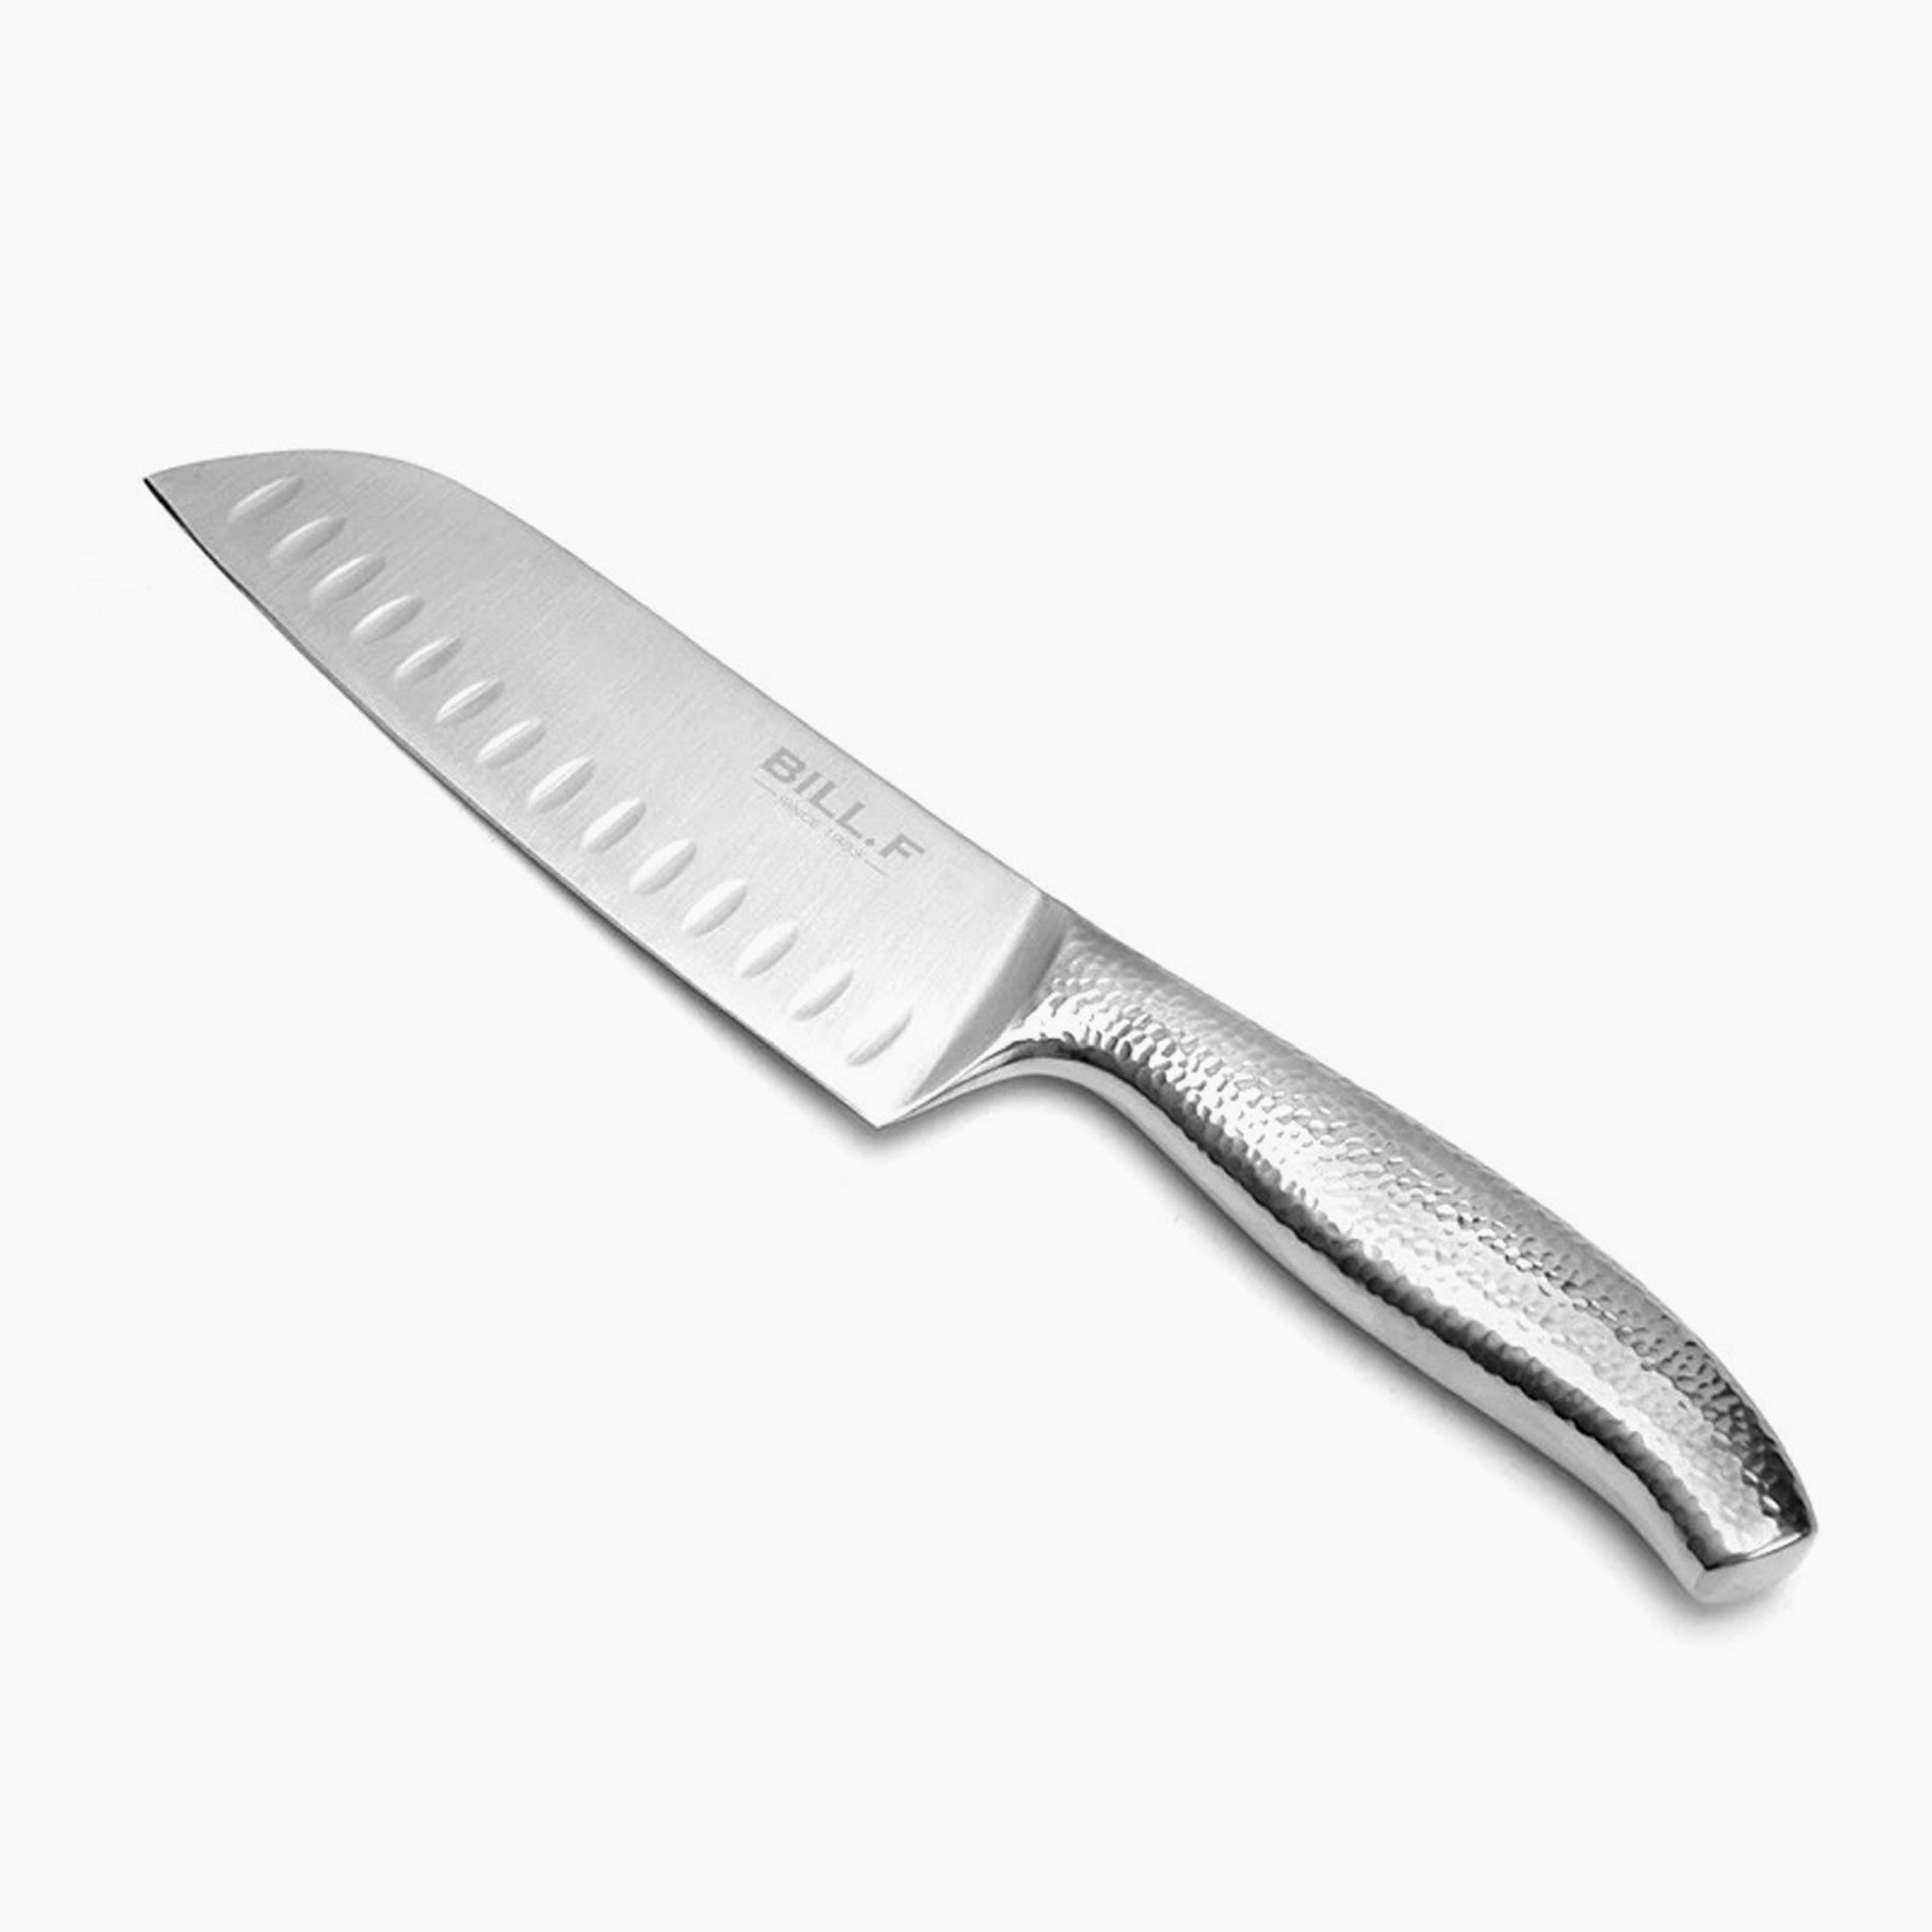 Buy 1 get 1 FREE - 7-Inch Santoku Knife